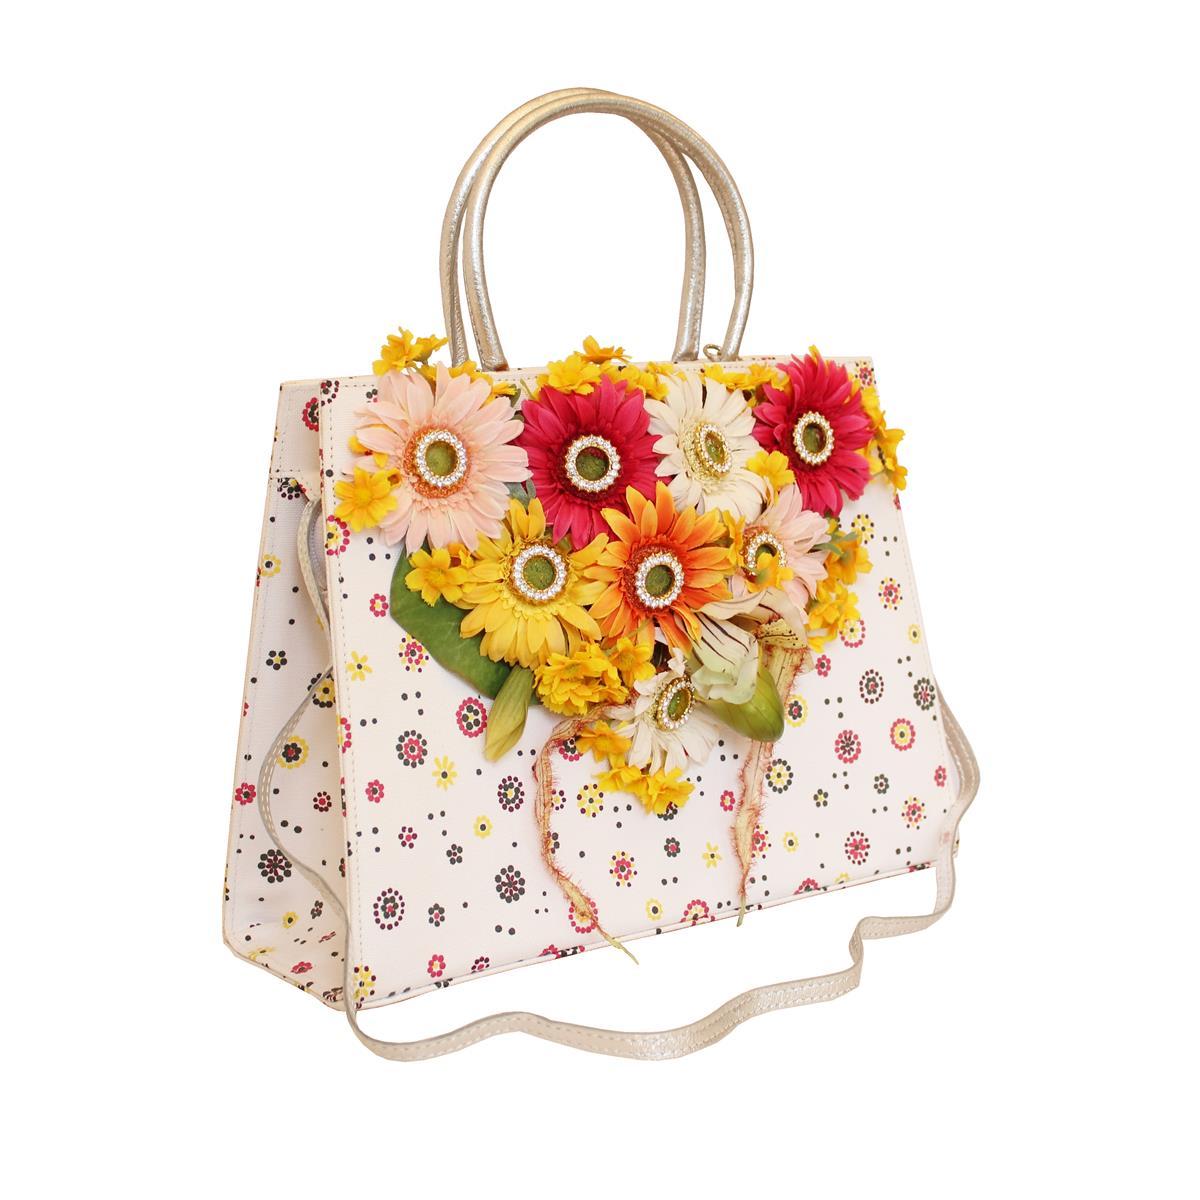 Carlo Zini Floral Jewel Bag In New Condition For Sale In Gazzaniga (BG), IT